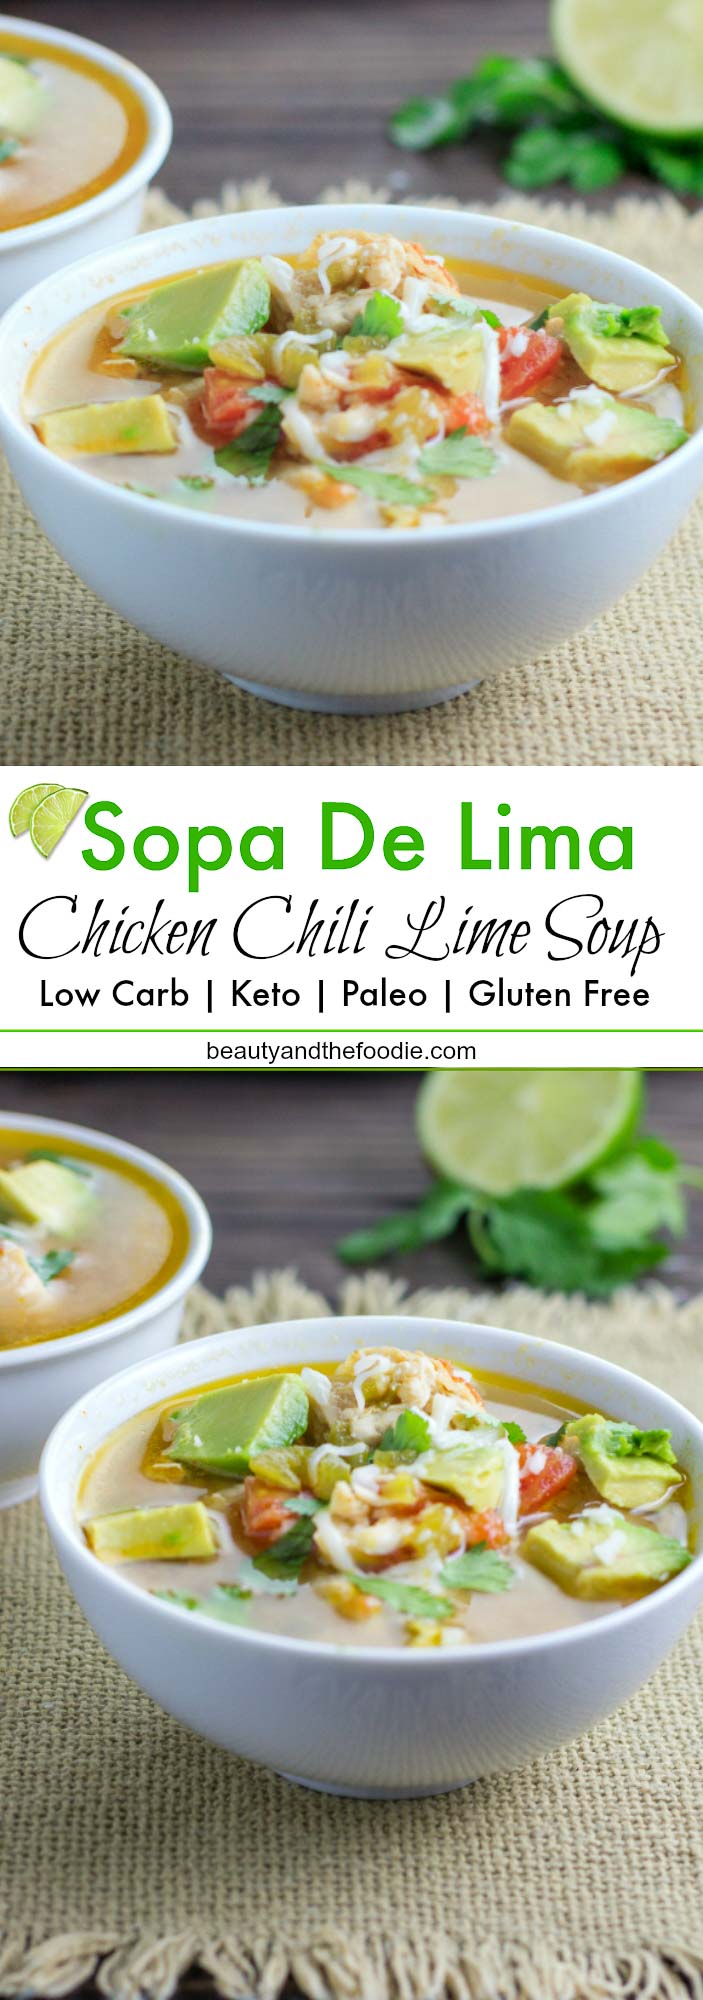 Sopa De Lima- Low Carb, Keto and Paleo